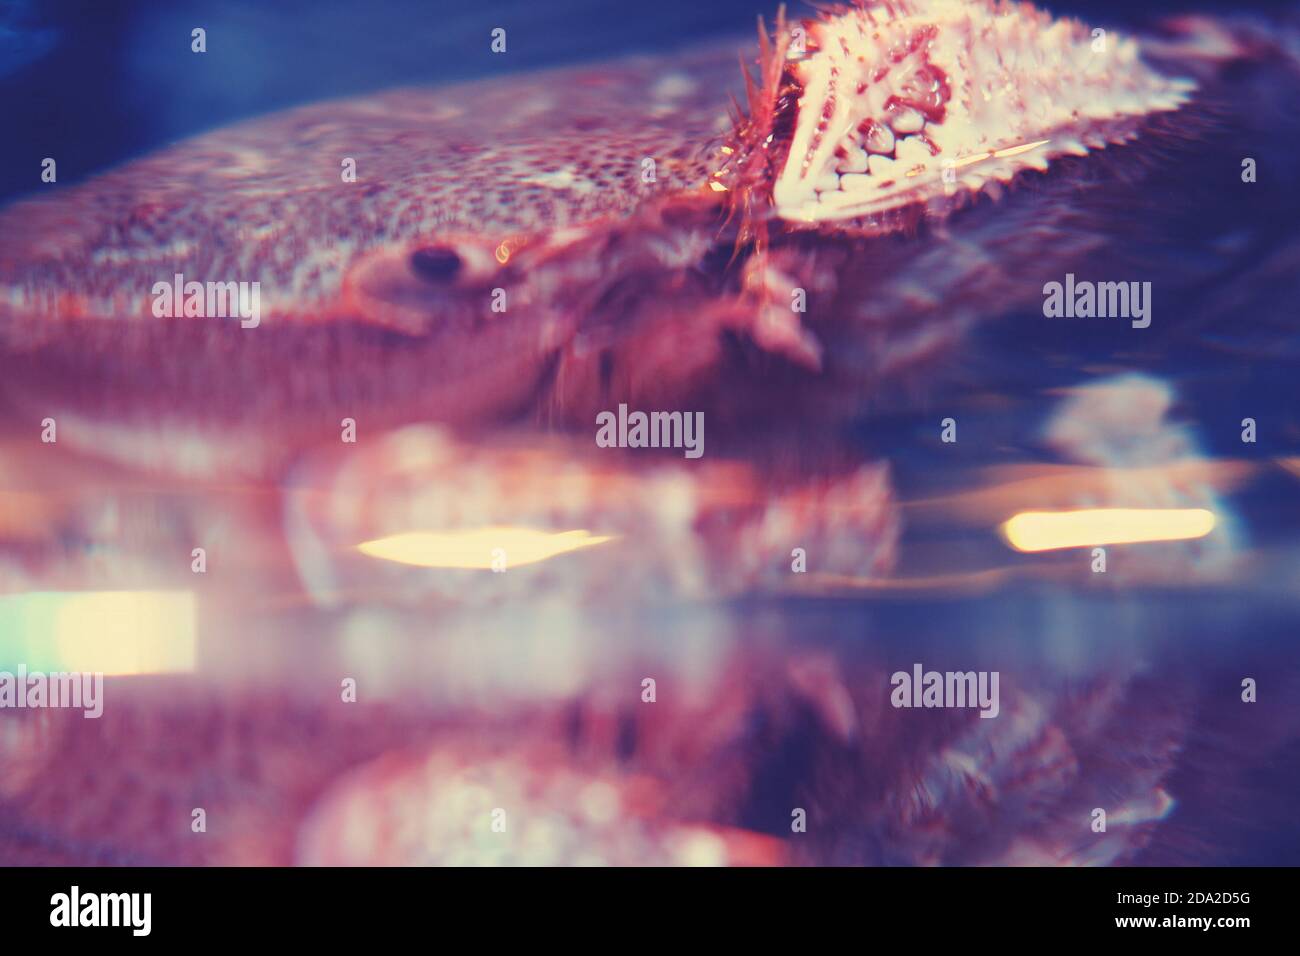 Erimacrus isenbeckii (Brandt) - viereckige haarige Krabbe, Nahaufnahme. Rosshaar Krabben kommerzielle Art von japanischen und russischen Meeresfrüchte Stockfoto